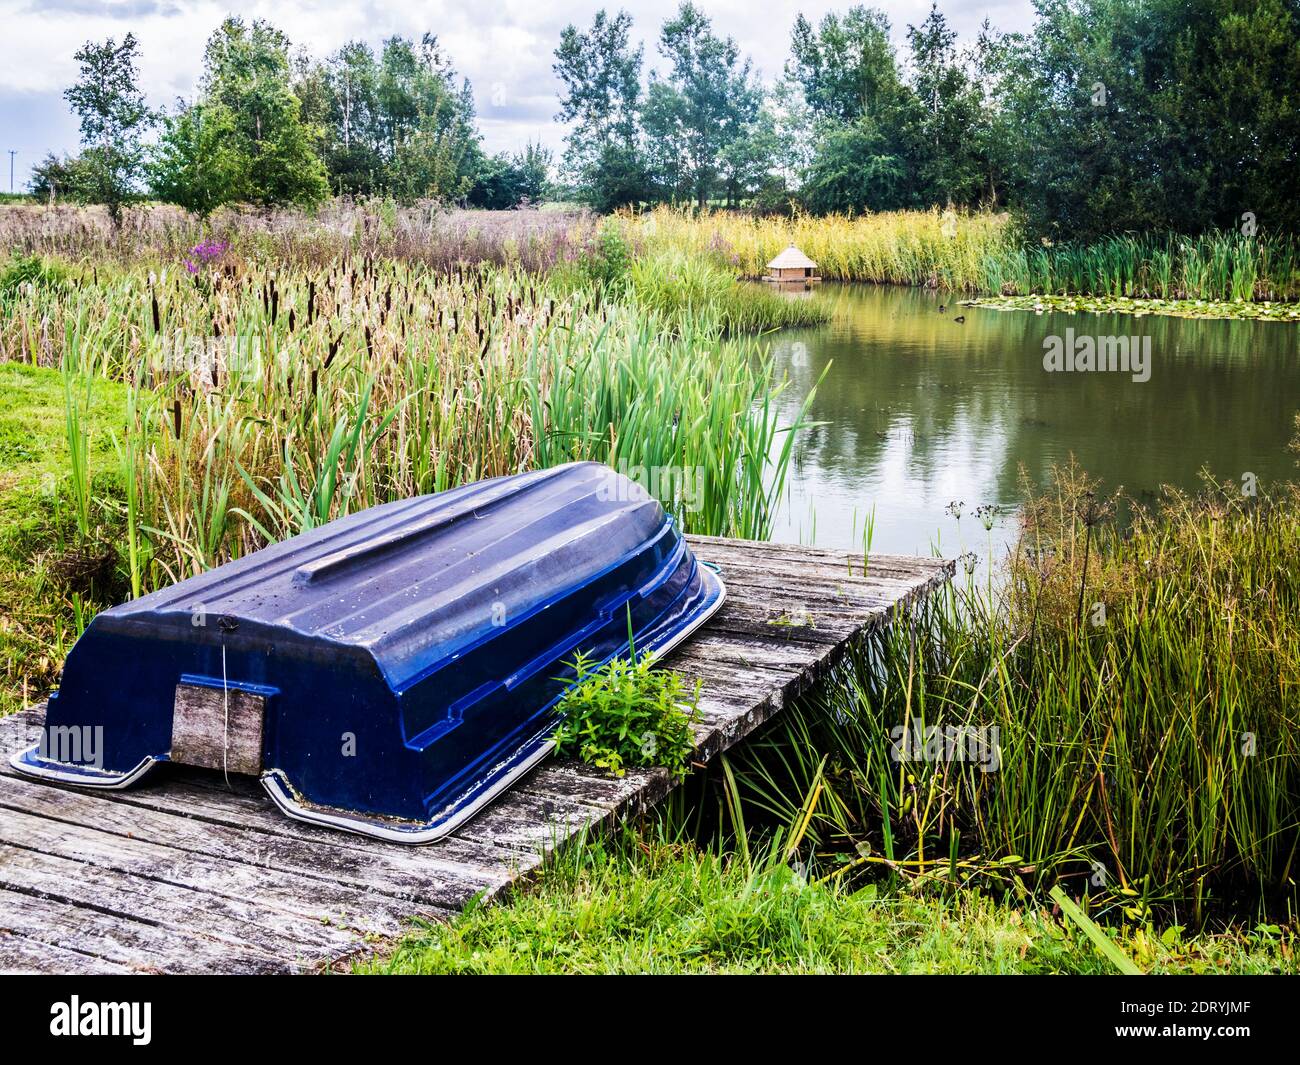 Un bote de remo en un embarcadero junto a un estanque con una casa de pato de madera más allá. Foto de stock